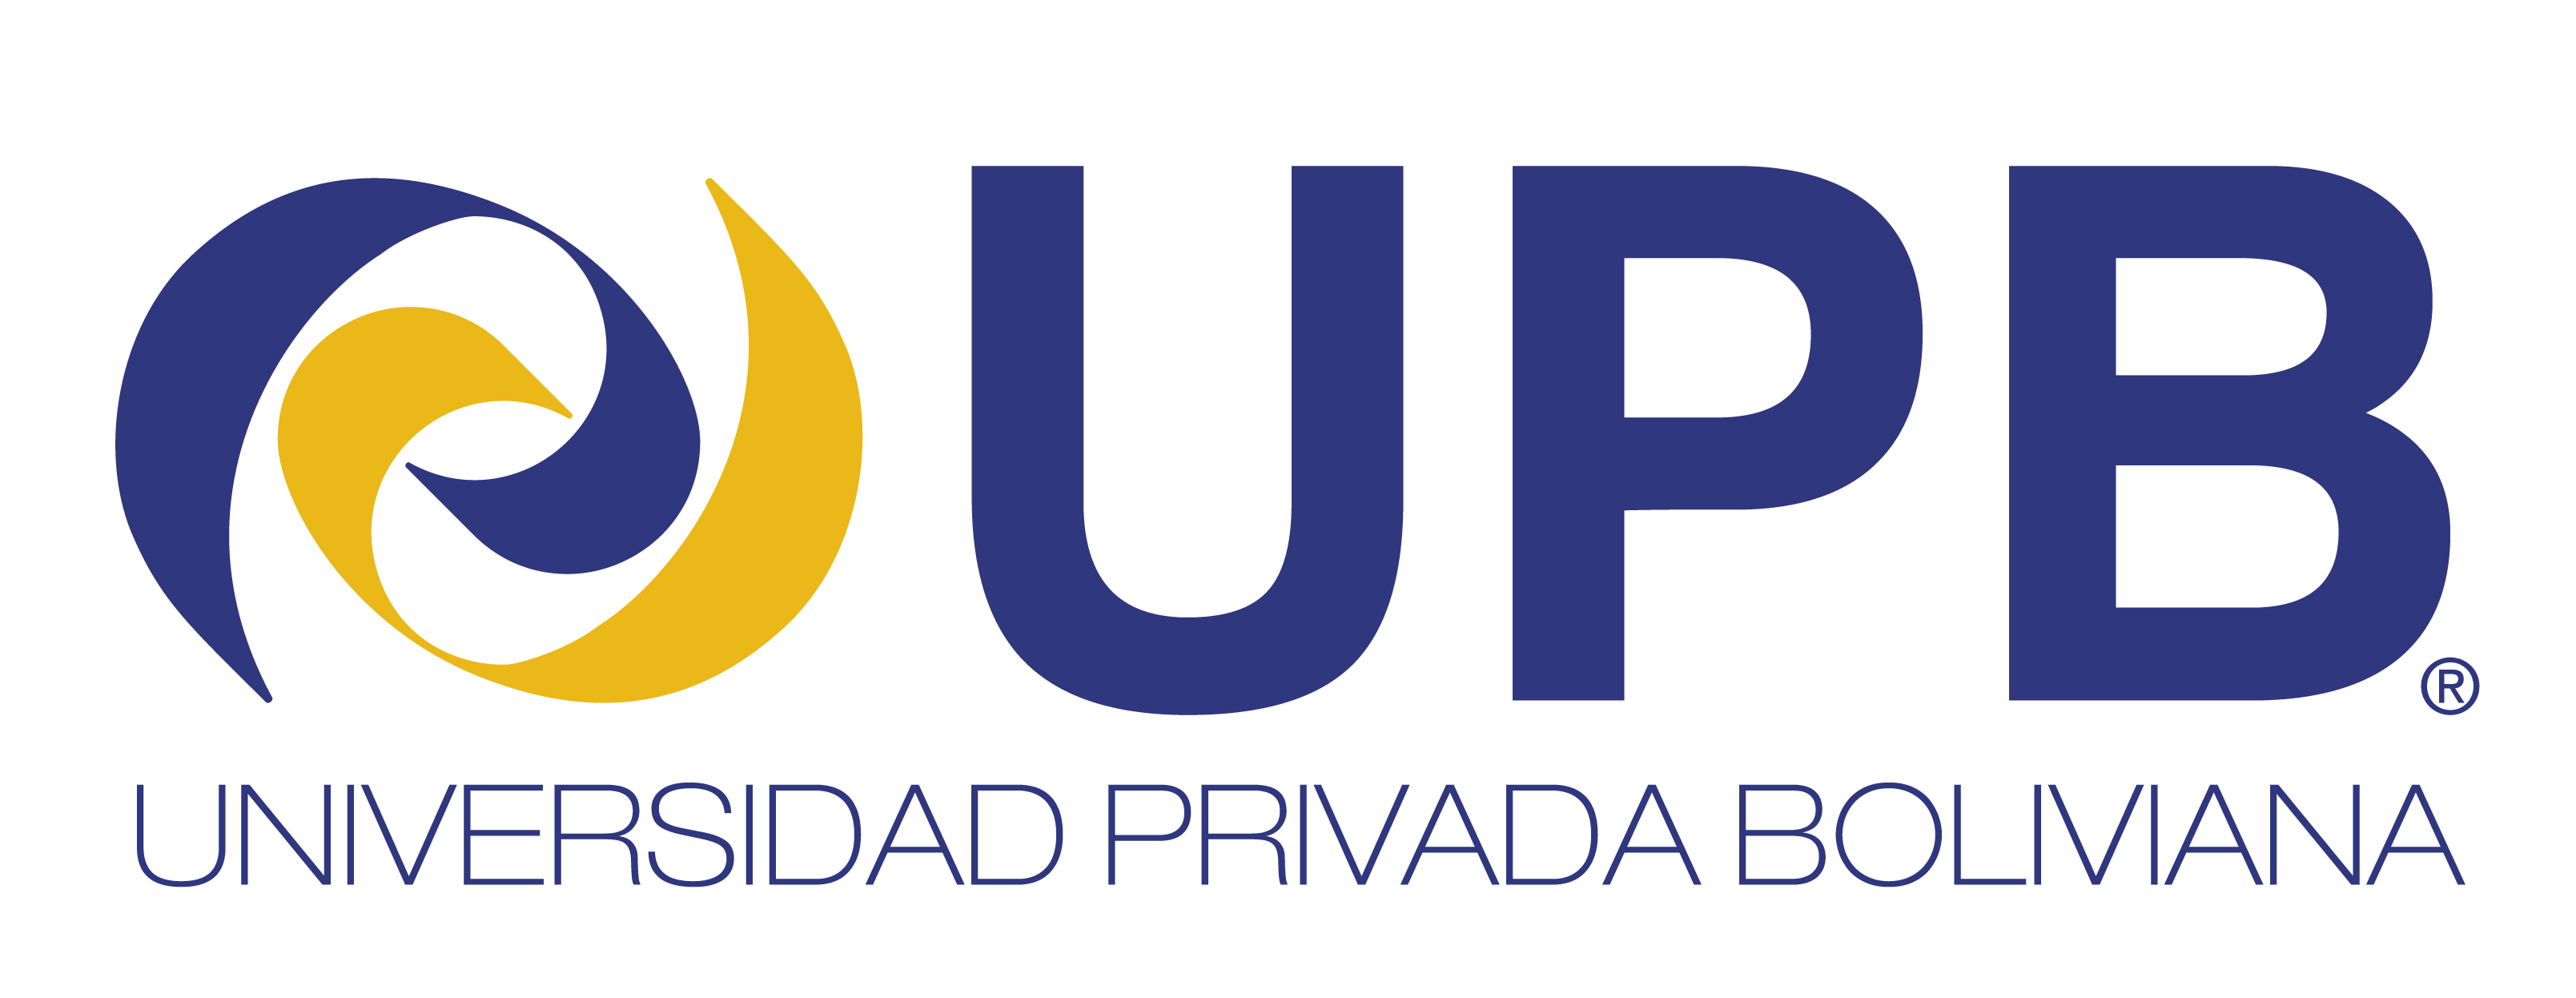 UPB Bolivia logo graphic